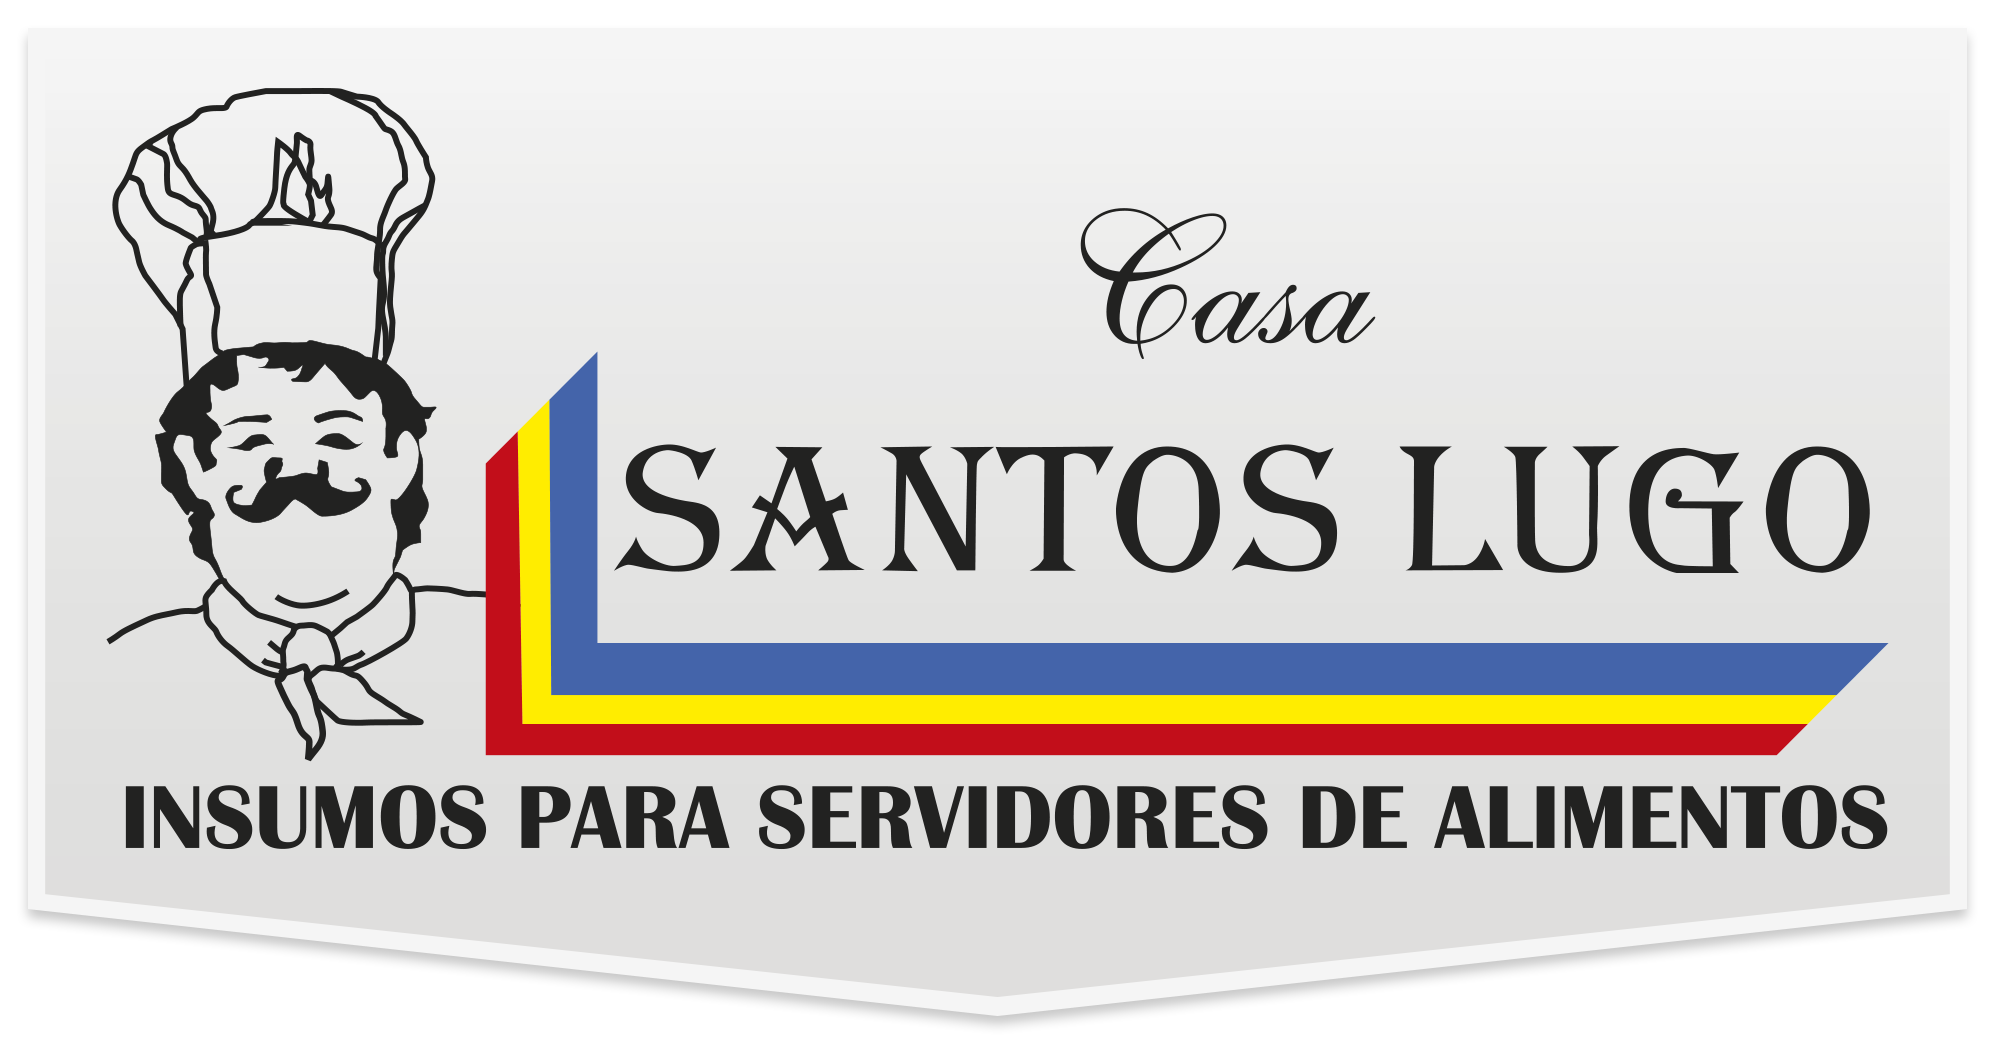 Santos Lugo | Categoría Limpieza e Higiene